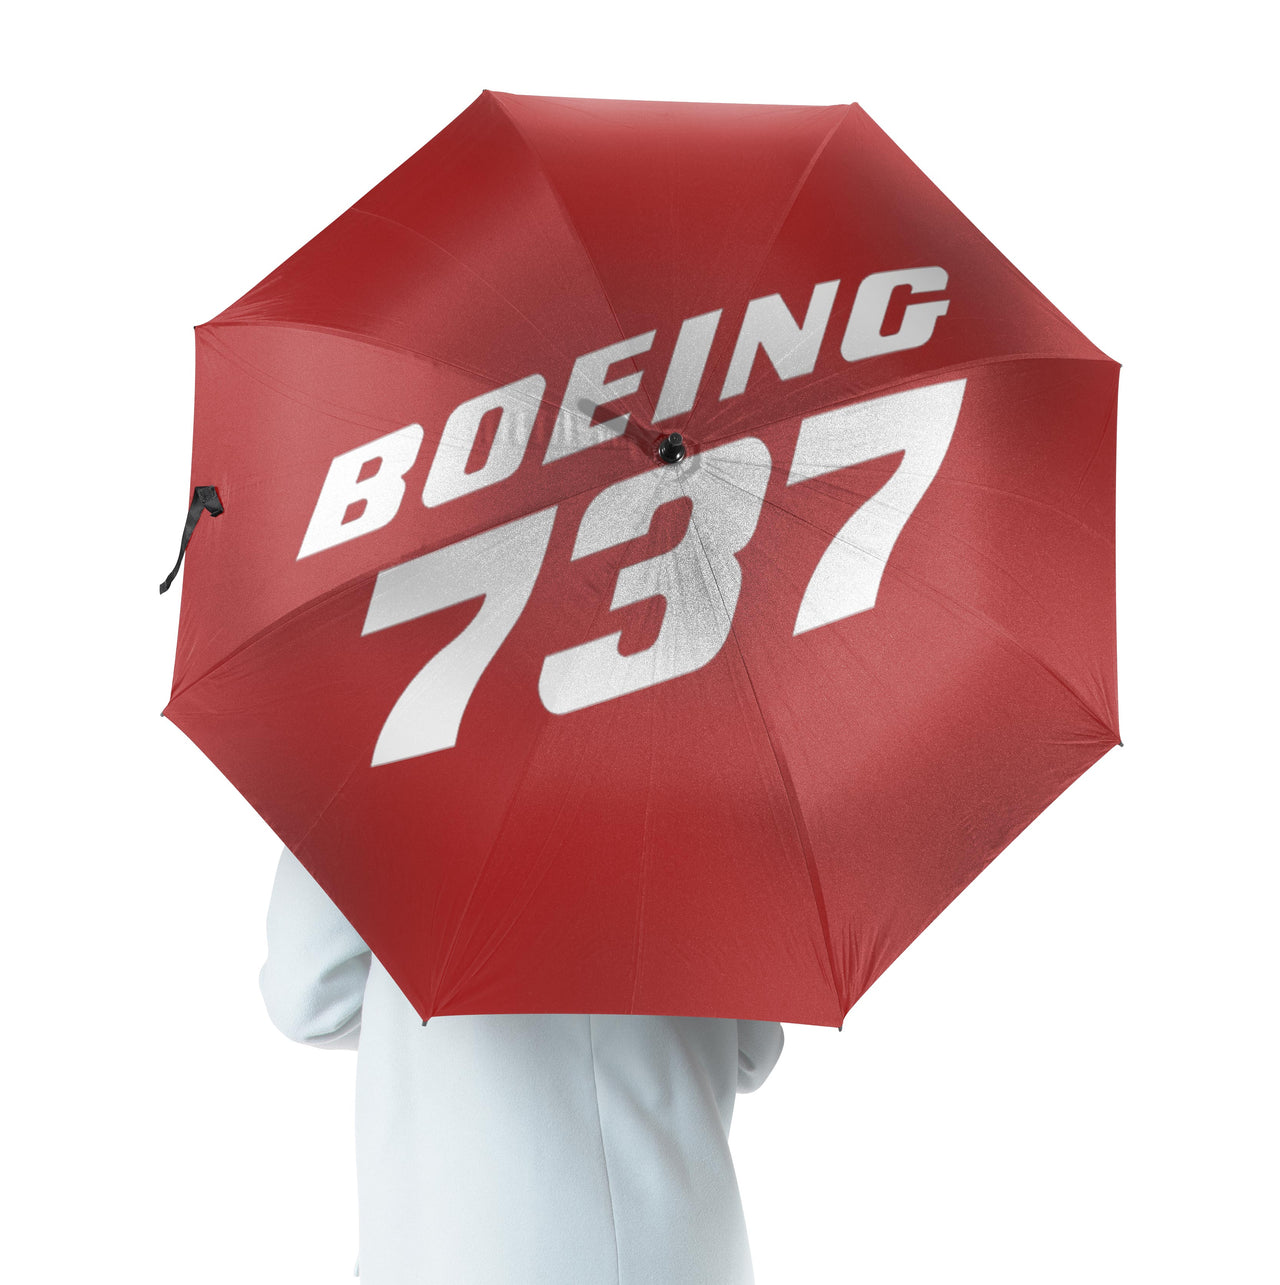 Boeing 737 & Text Designed Umbrella